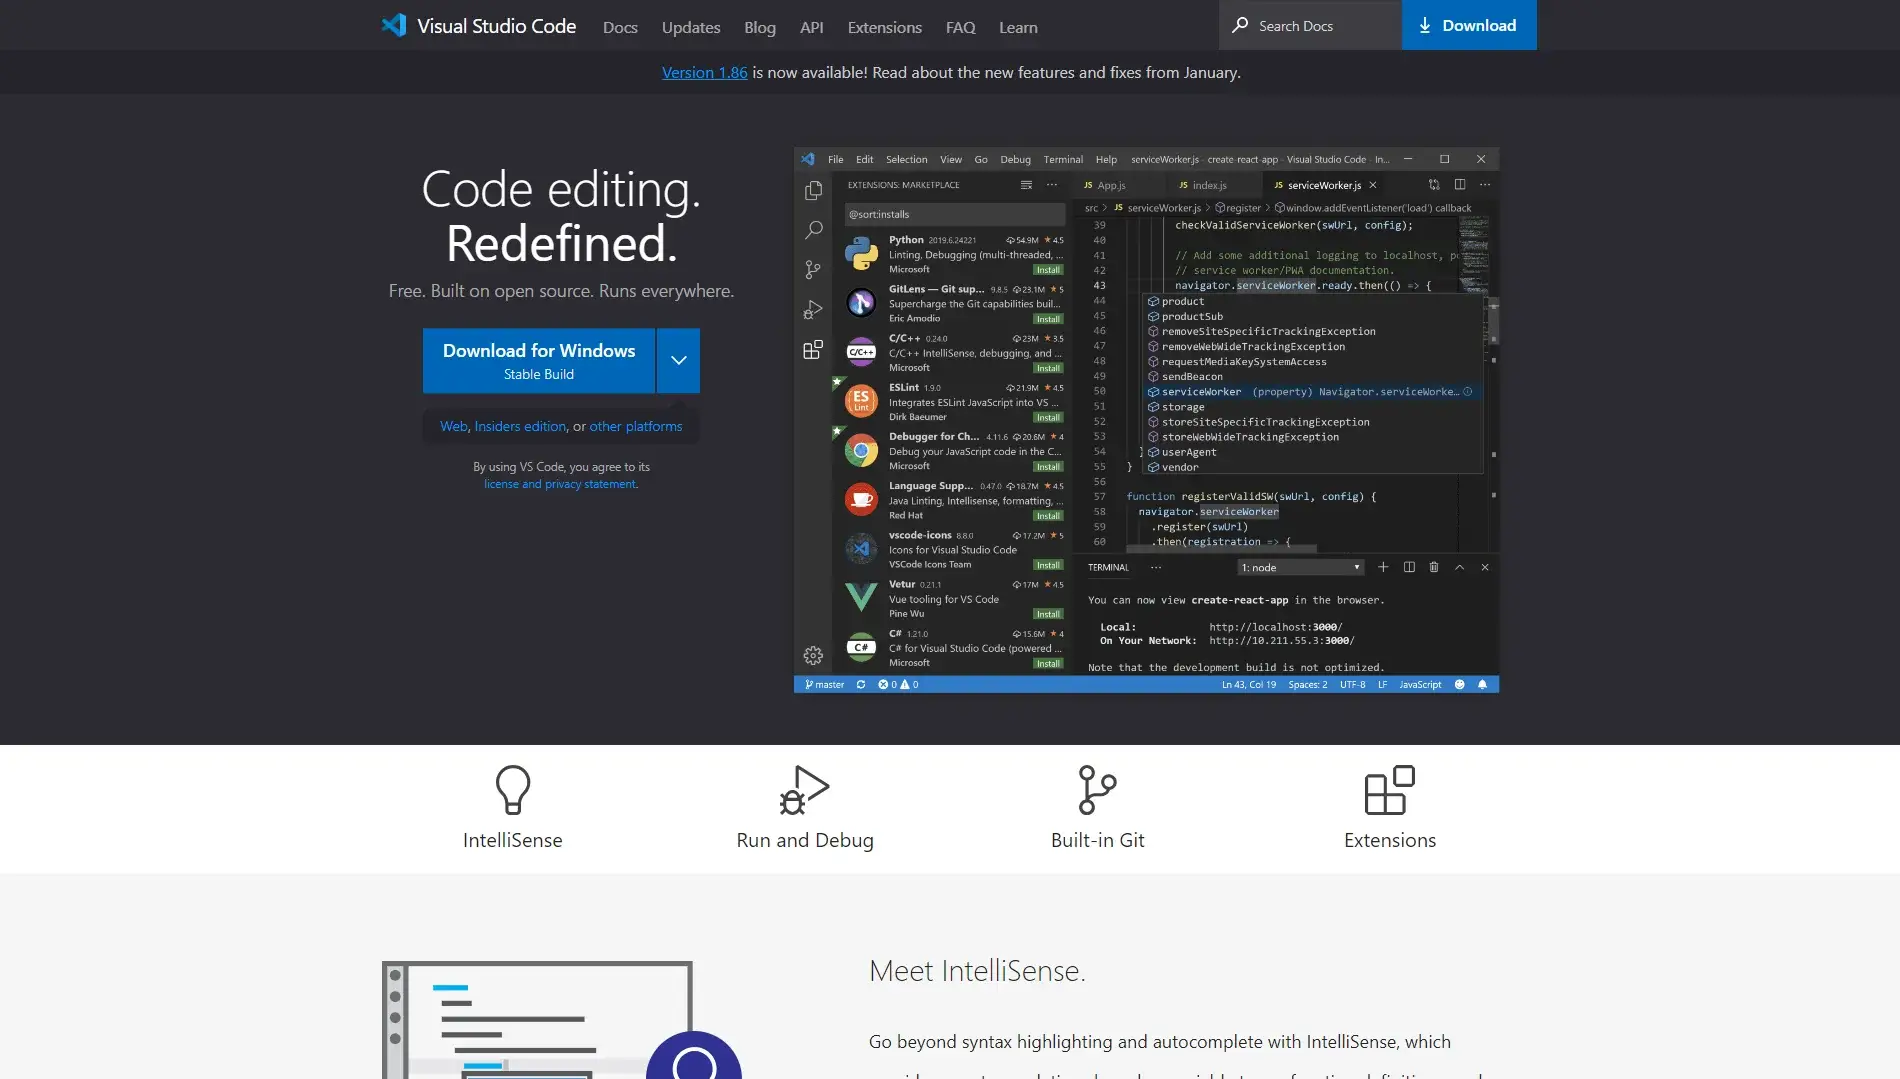 Visual Studio Code website homepage.